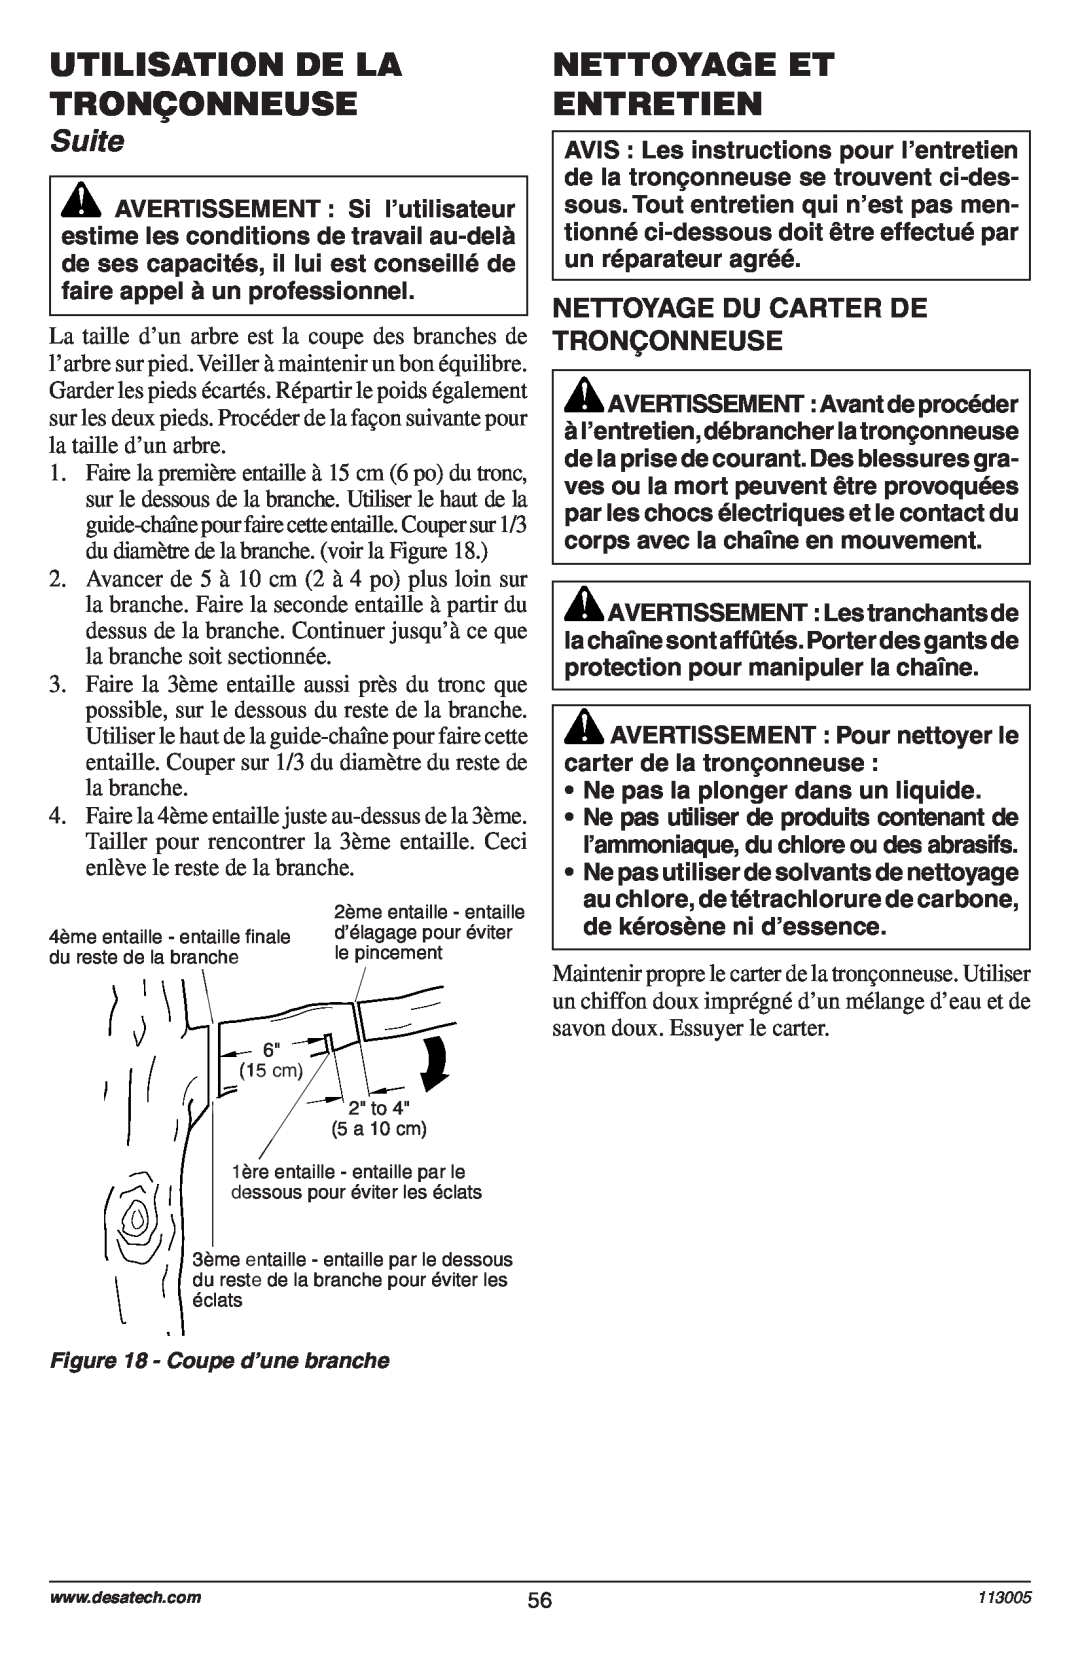 Remington Power Tools Electric Chain Saw owner manual Nettoyage Et Entretien, Nettoyage Du Carter De Tronçonneuse, Suite 